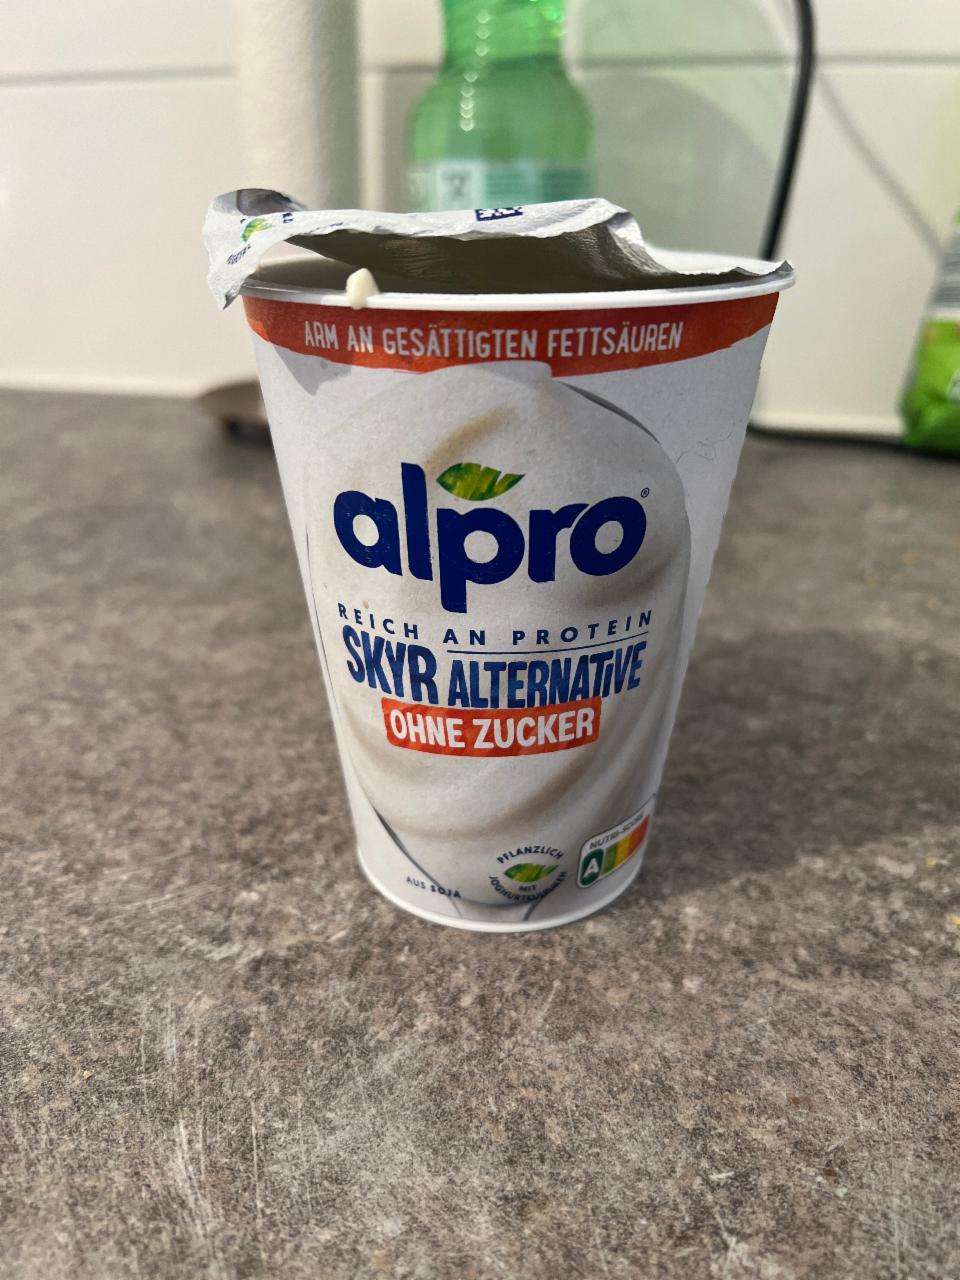 Фото - йогурт скир альтернативынй без сахара Alpro